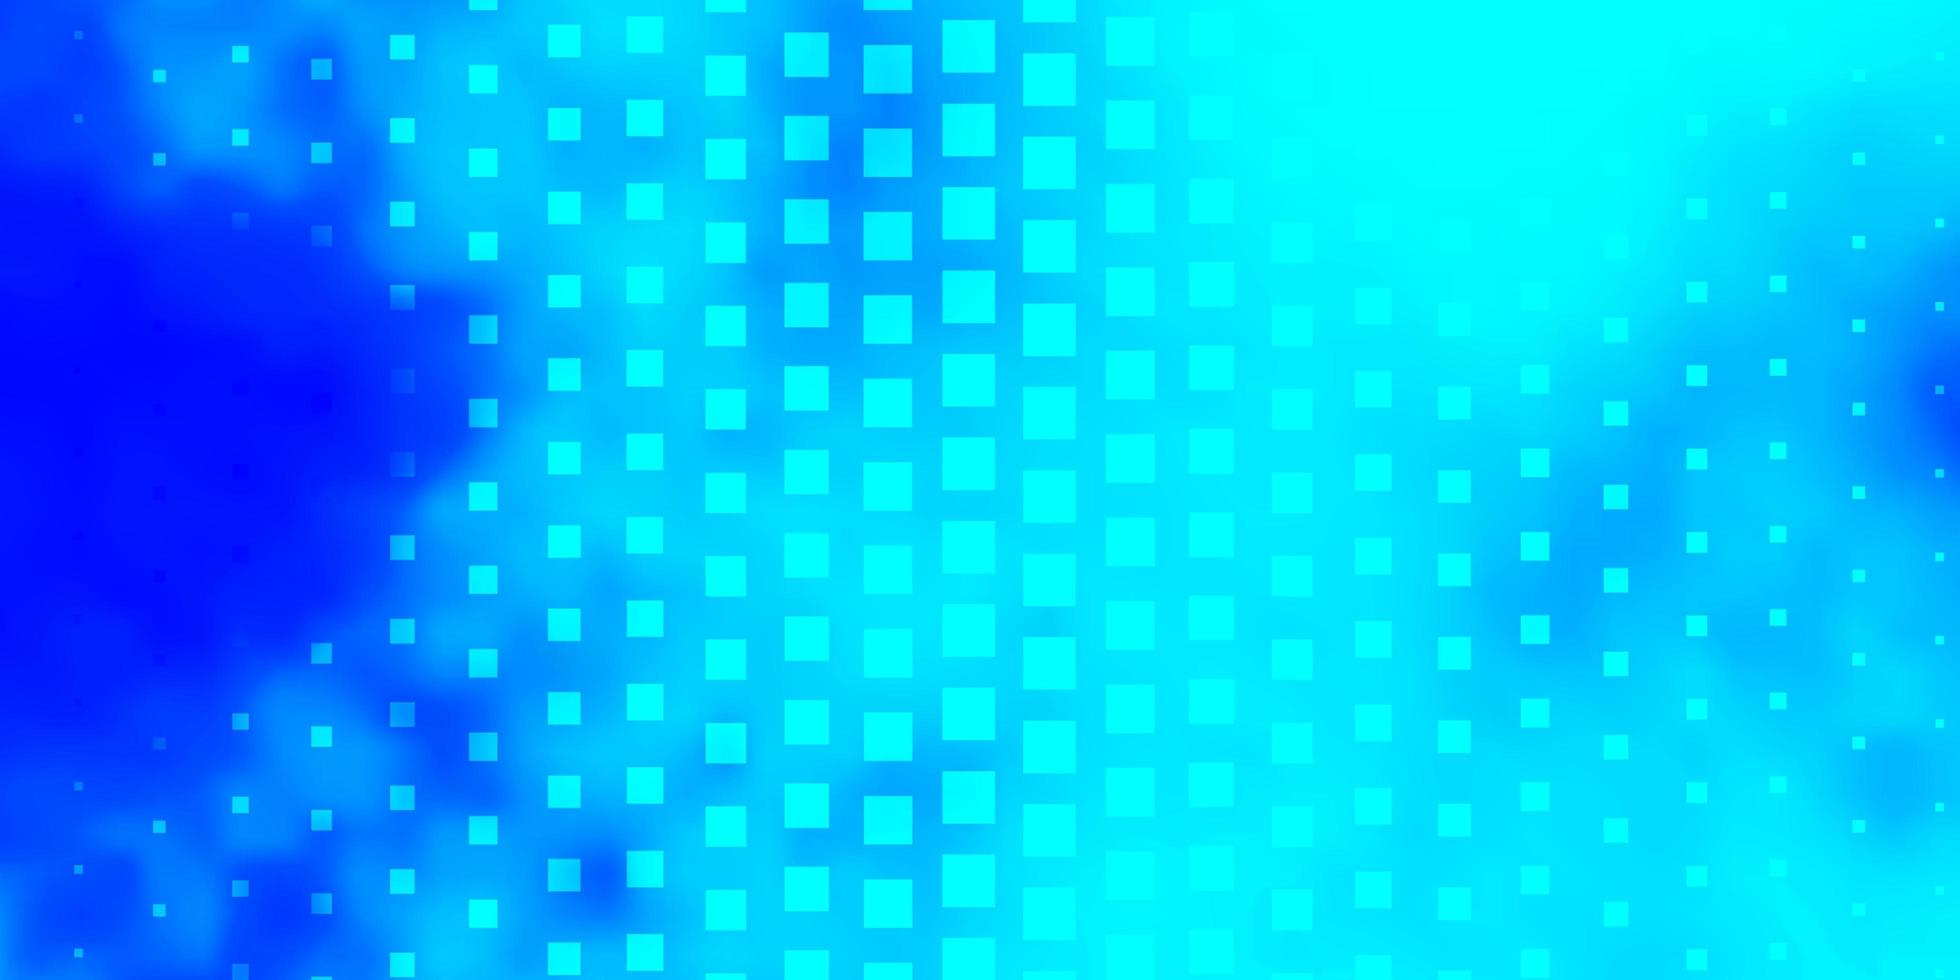 Fondo de vector azul claro con rectángulos. ilustración con un conjunto de rectángulos degradados. plantilla moderna para su página de destino.